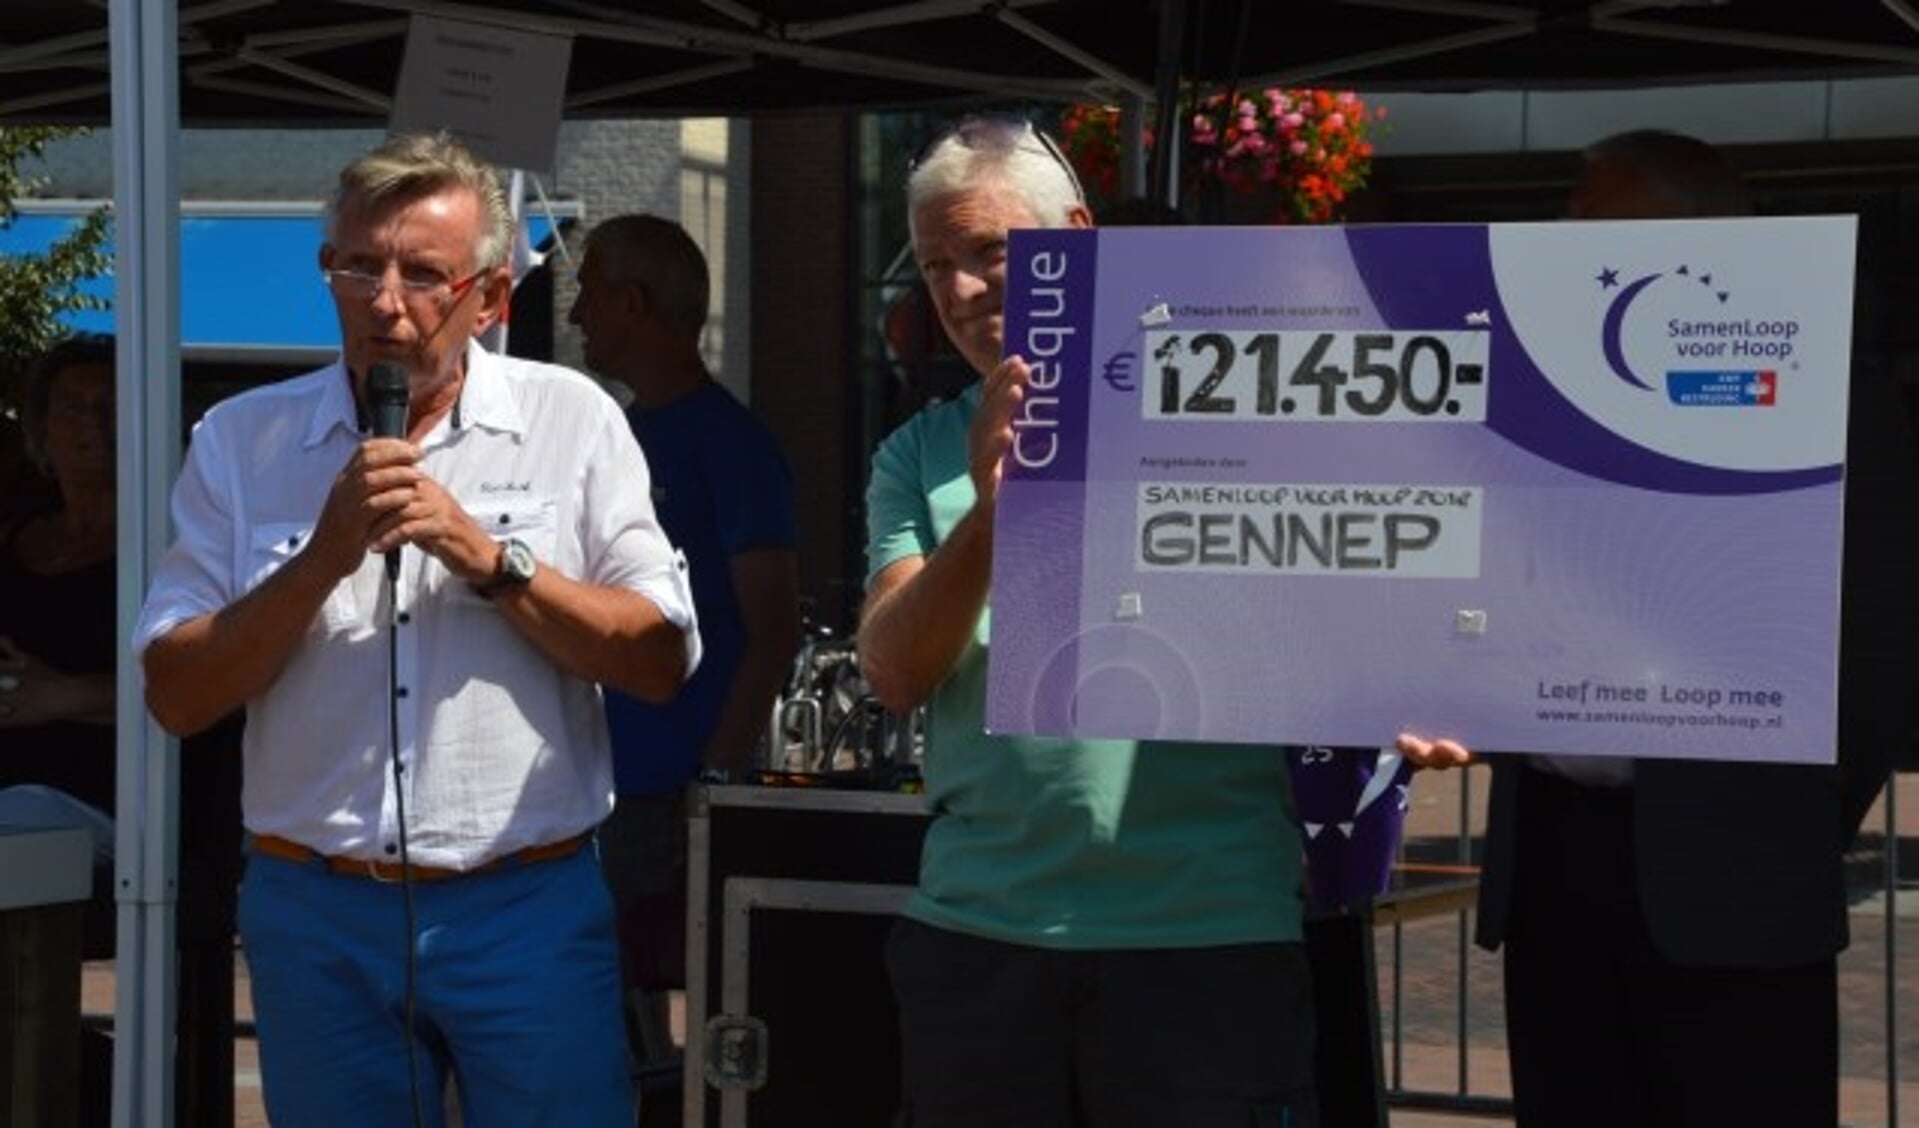 Er werd al 121.450 euro opgehaald bij SamenLoop voor Hoop Gennep.